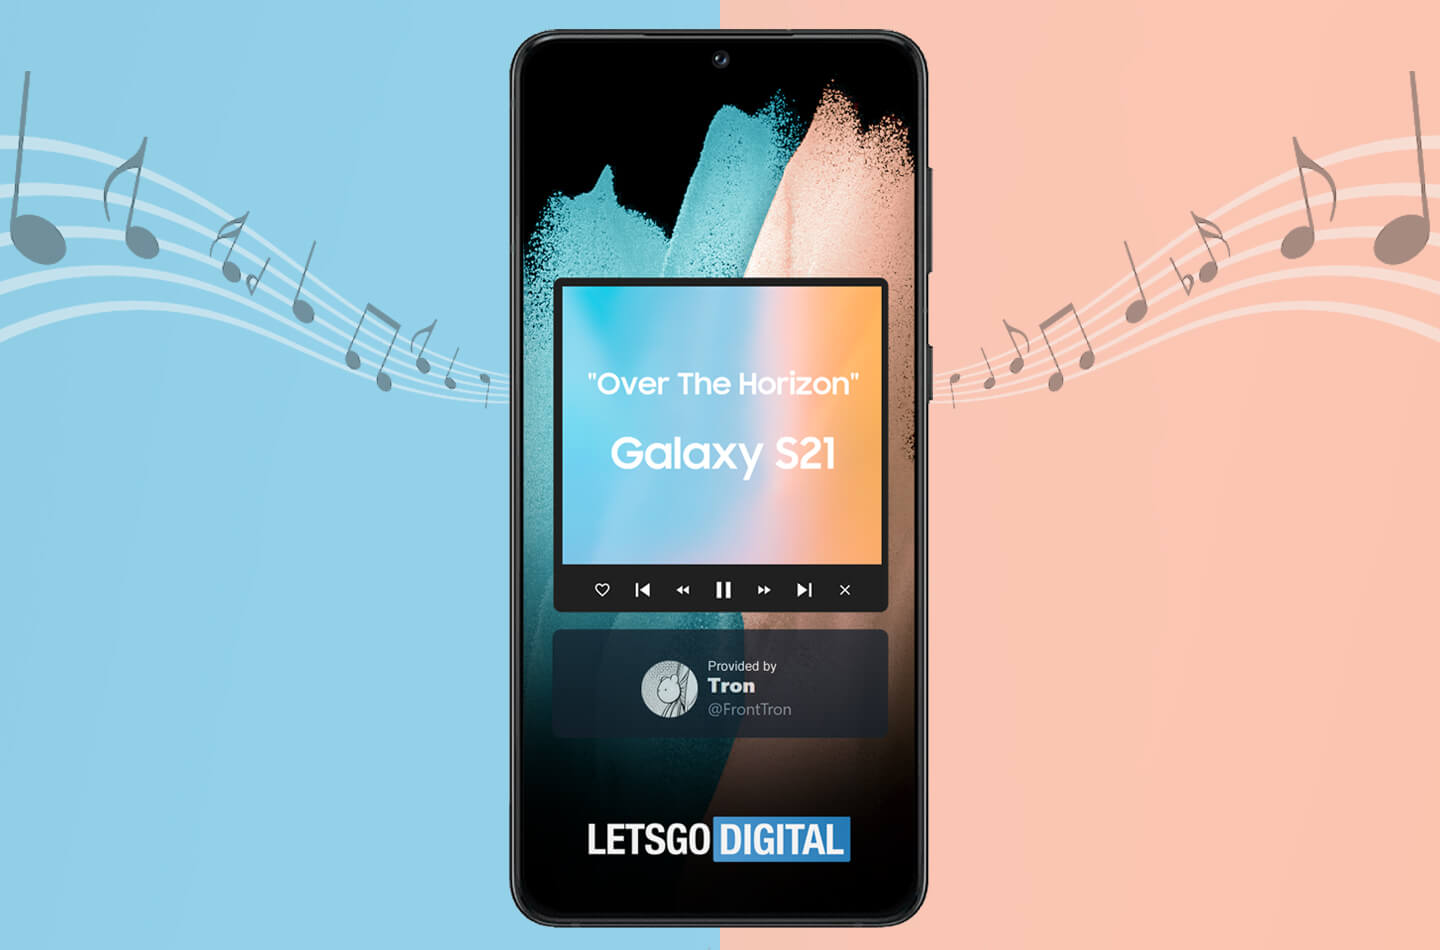 Tono de llamada del Samsung Galaxy S21: Over The Horizon 2021